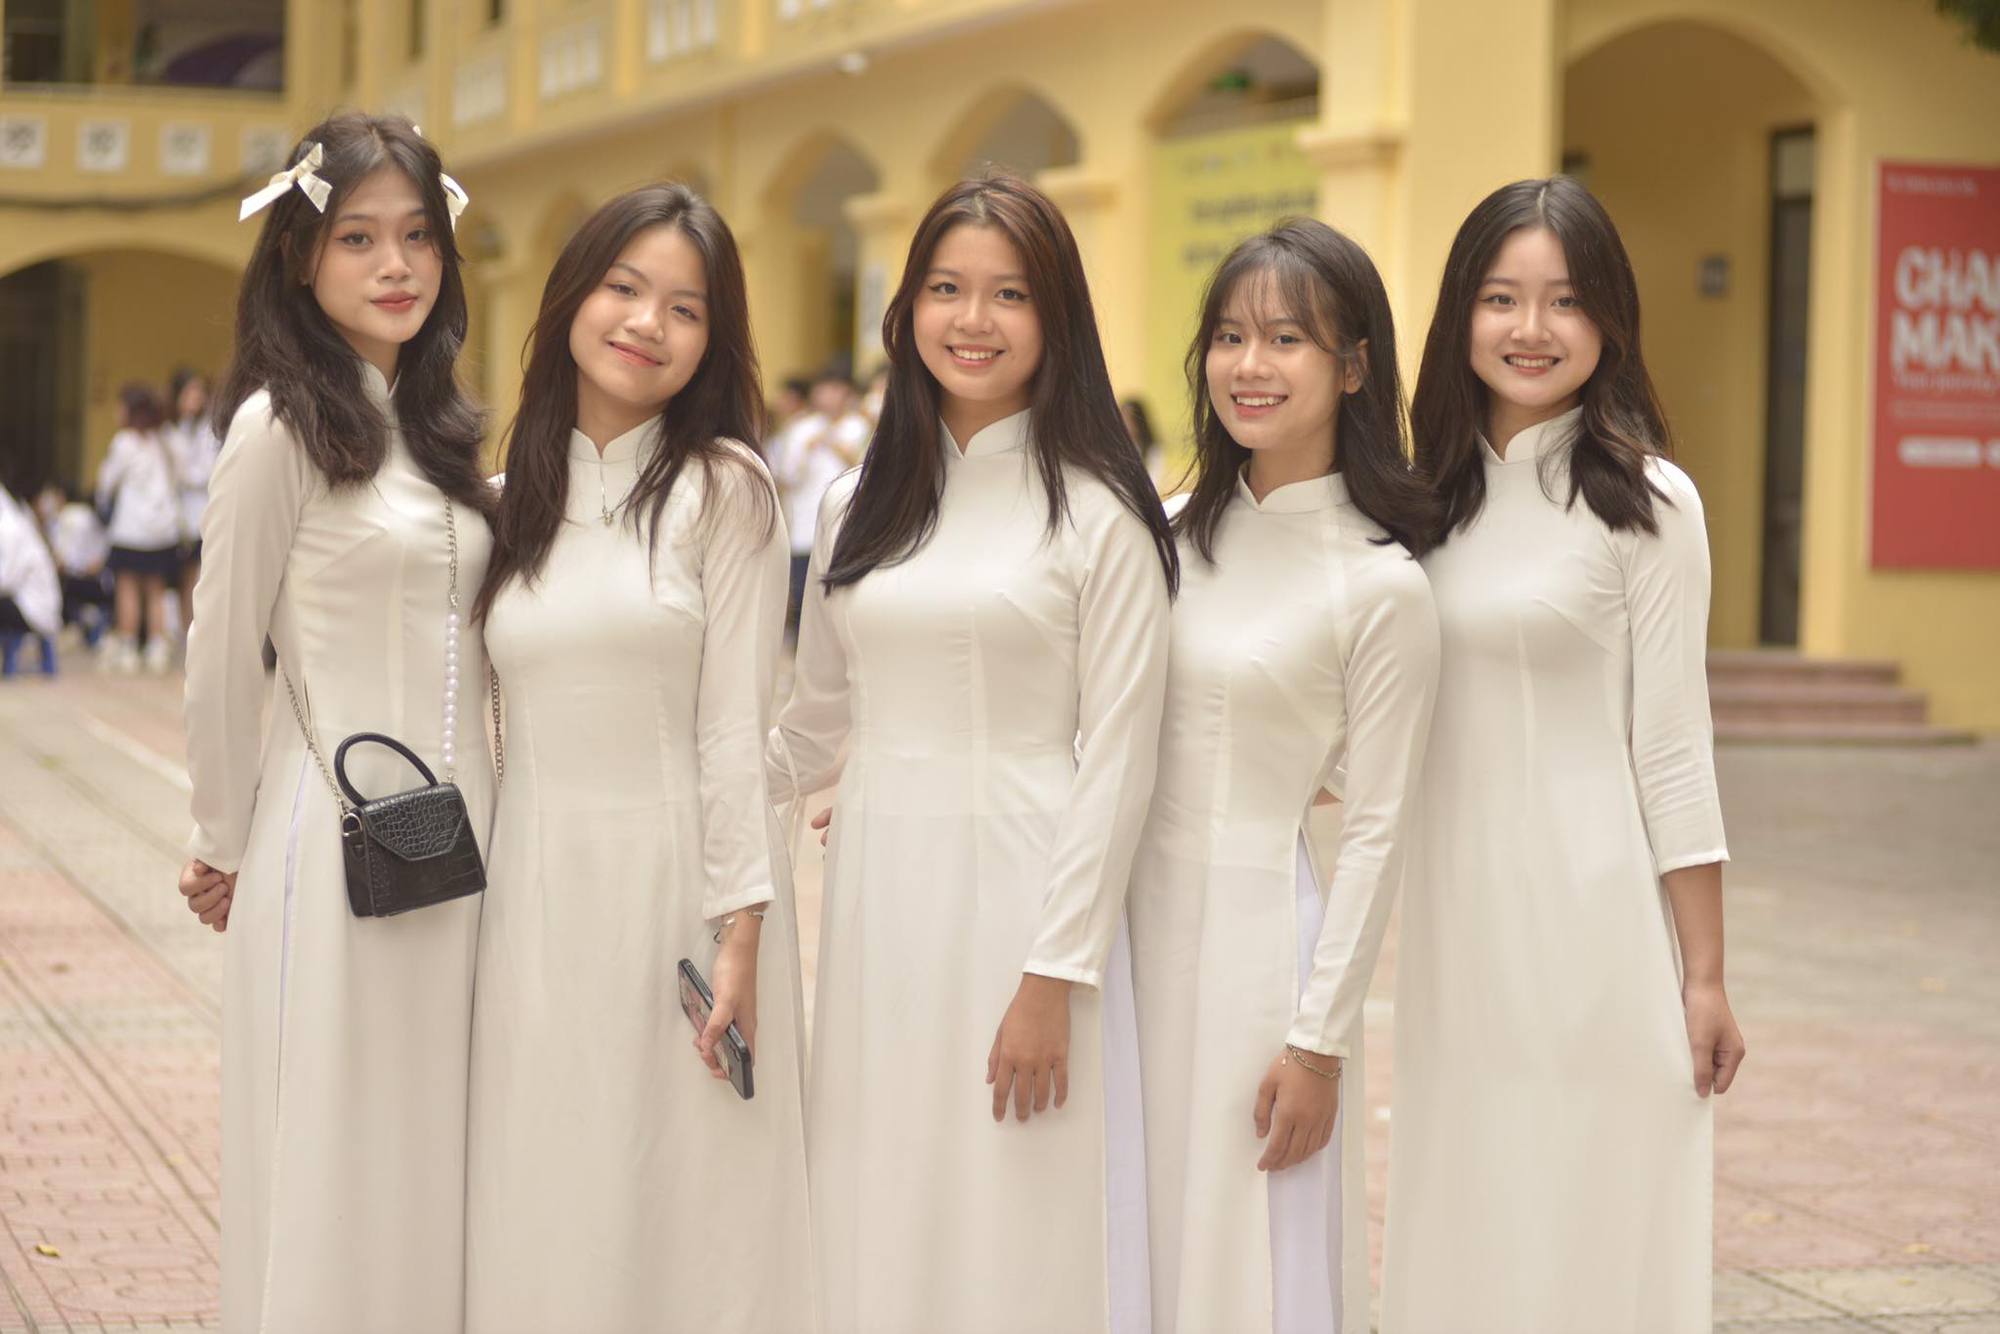 Dàn nữ sinh trong lễ khai giảng, chỉ diện áo dài trắng là ai cũng xinh! - Ảnh 5.